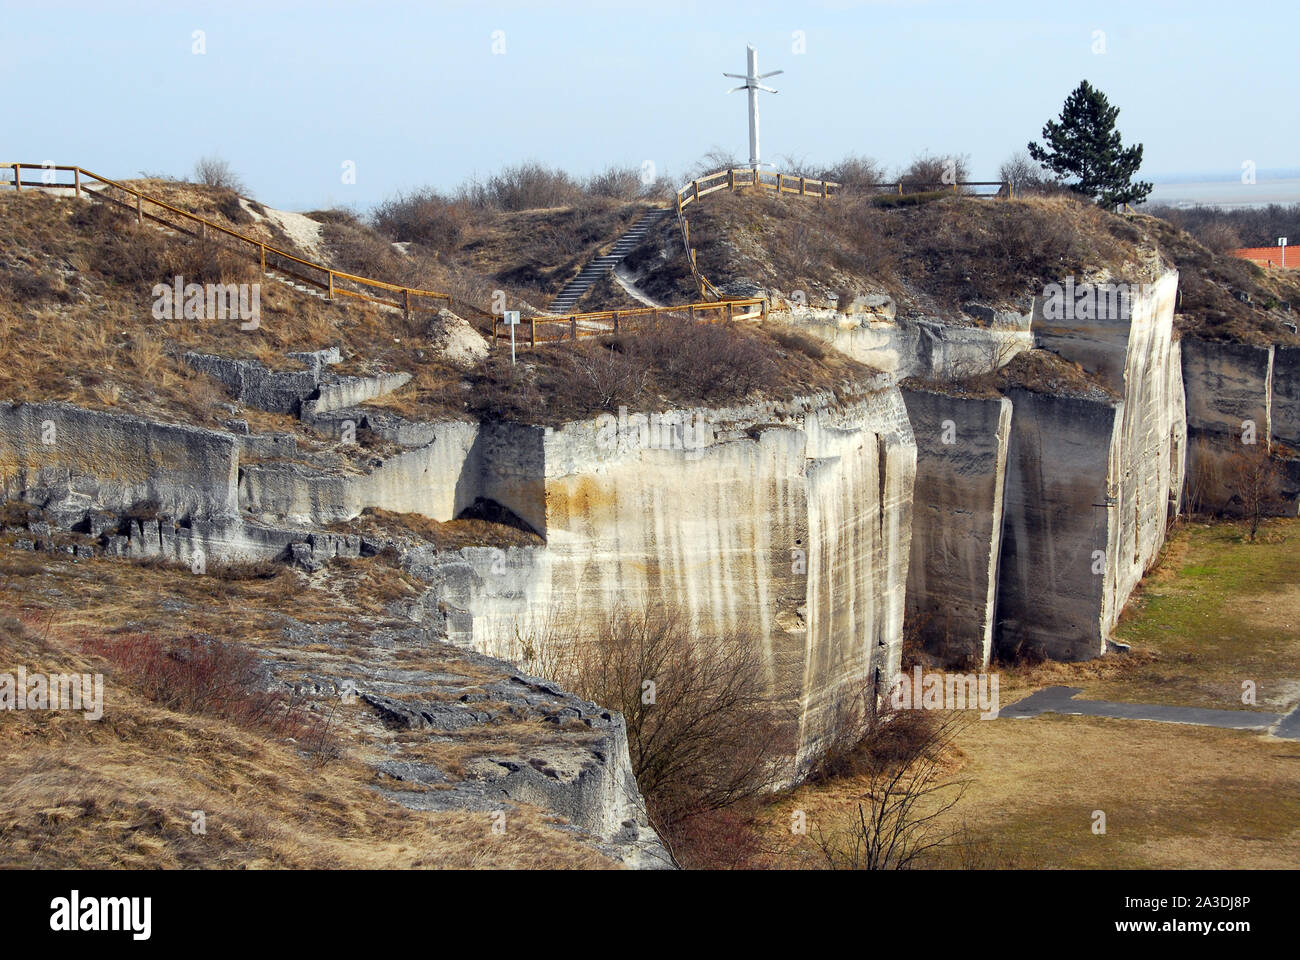 Former quarry, Fertőrákos, Győr-Moson-Sopron county, Hungary, Magyarország, Europe Stock Photo